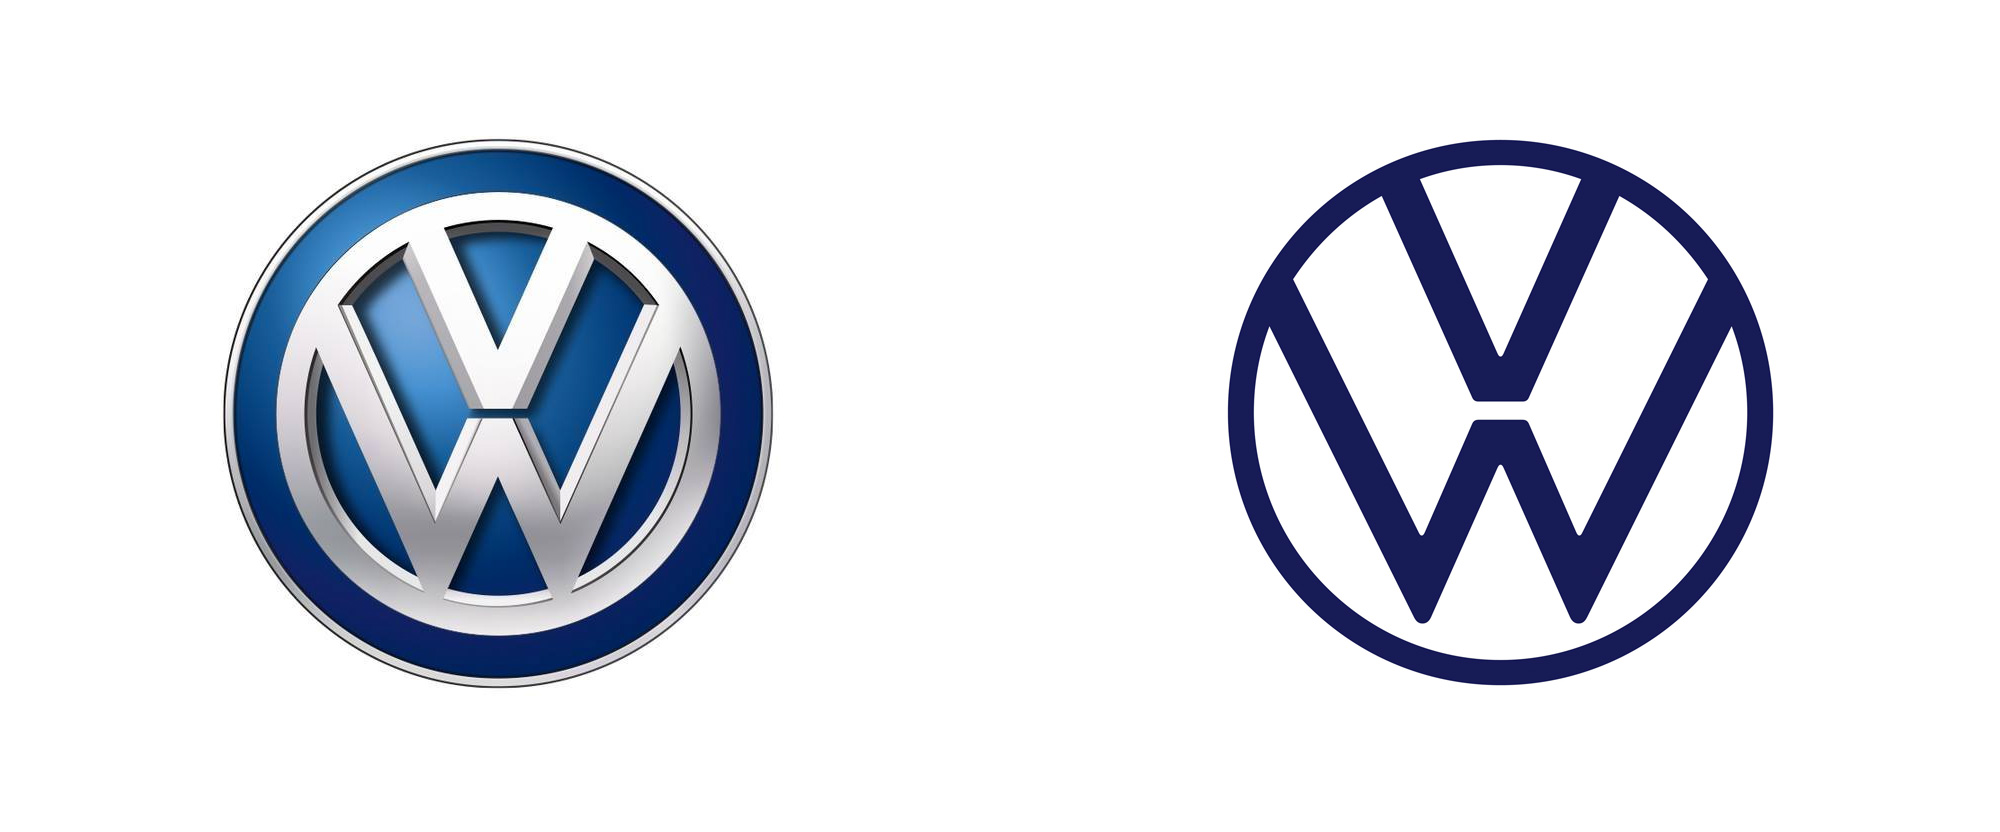 Volkswagen giới thiệu logo mới, ứng dụng logo âm thanh đầu tiên